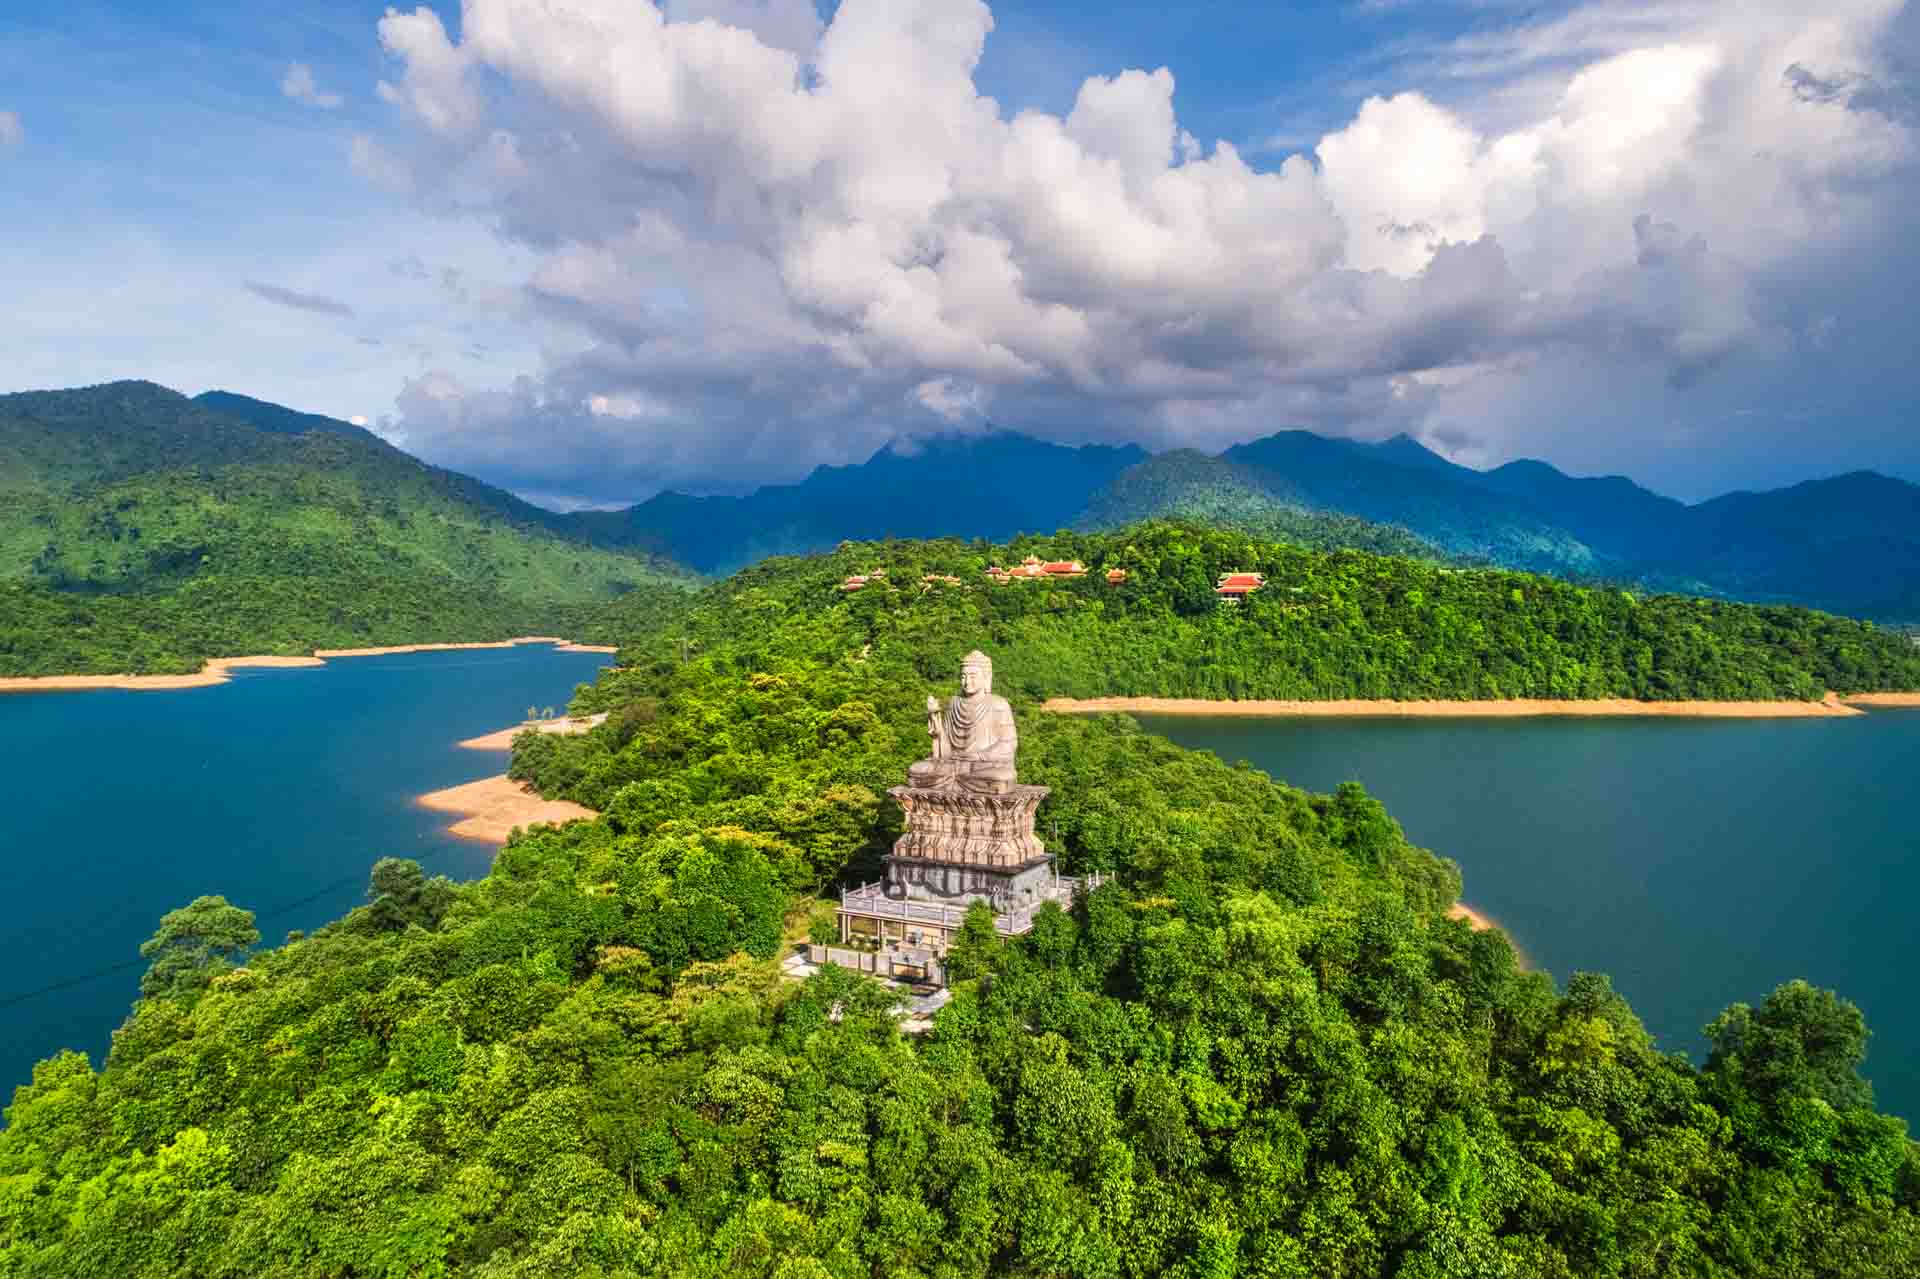 Tour du lịch Huế – Thiền viện Trúc Lâm – Lăng Cô 1 Ngày